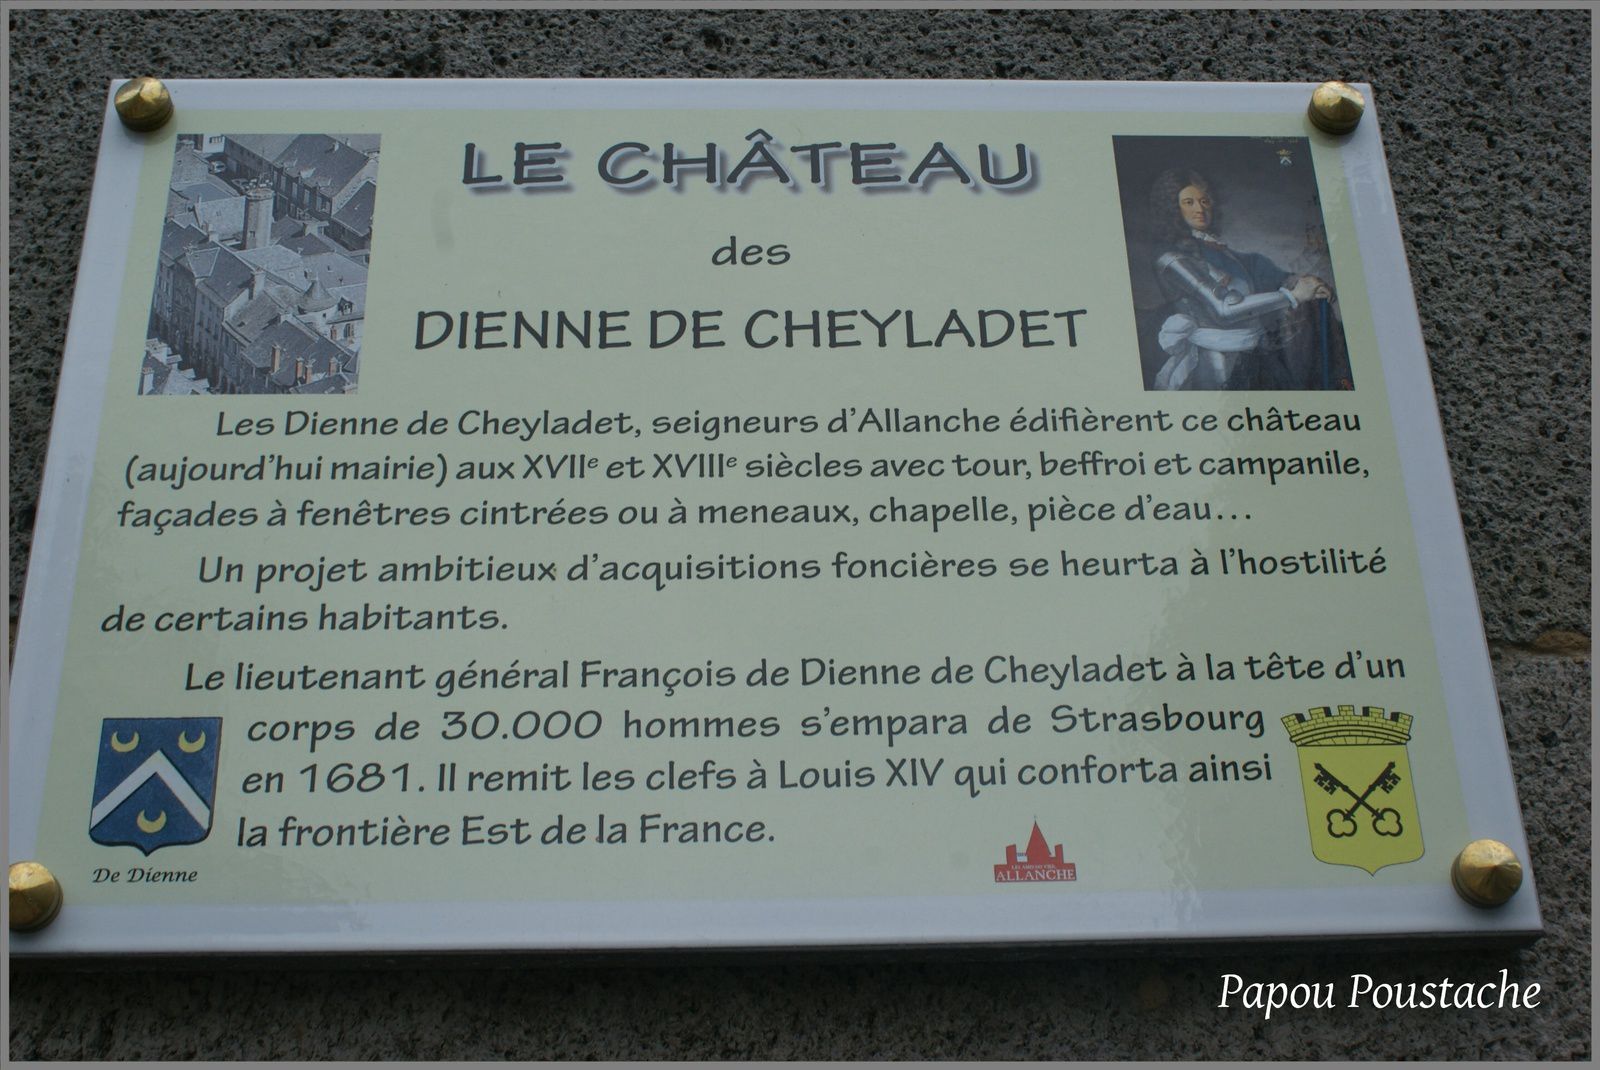 C'était à Allanche:Le chateau des Dienne de Cheyladet